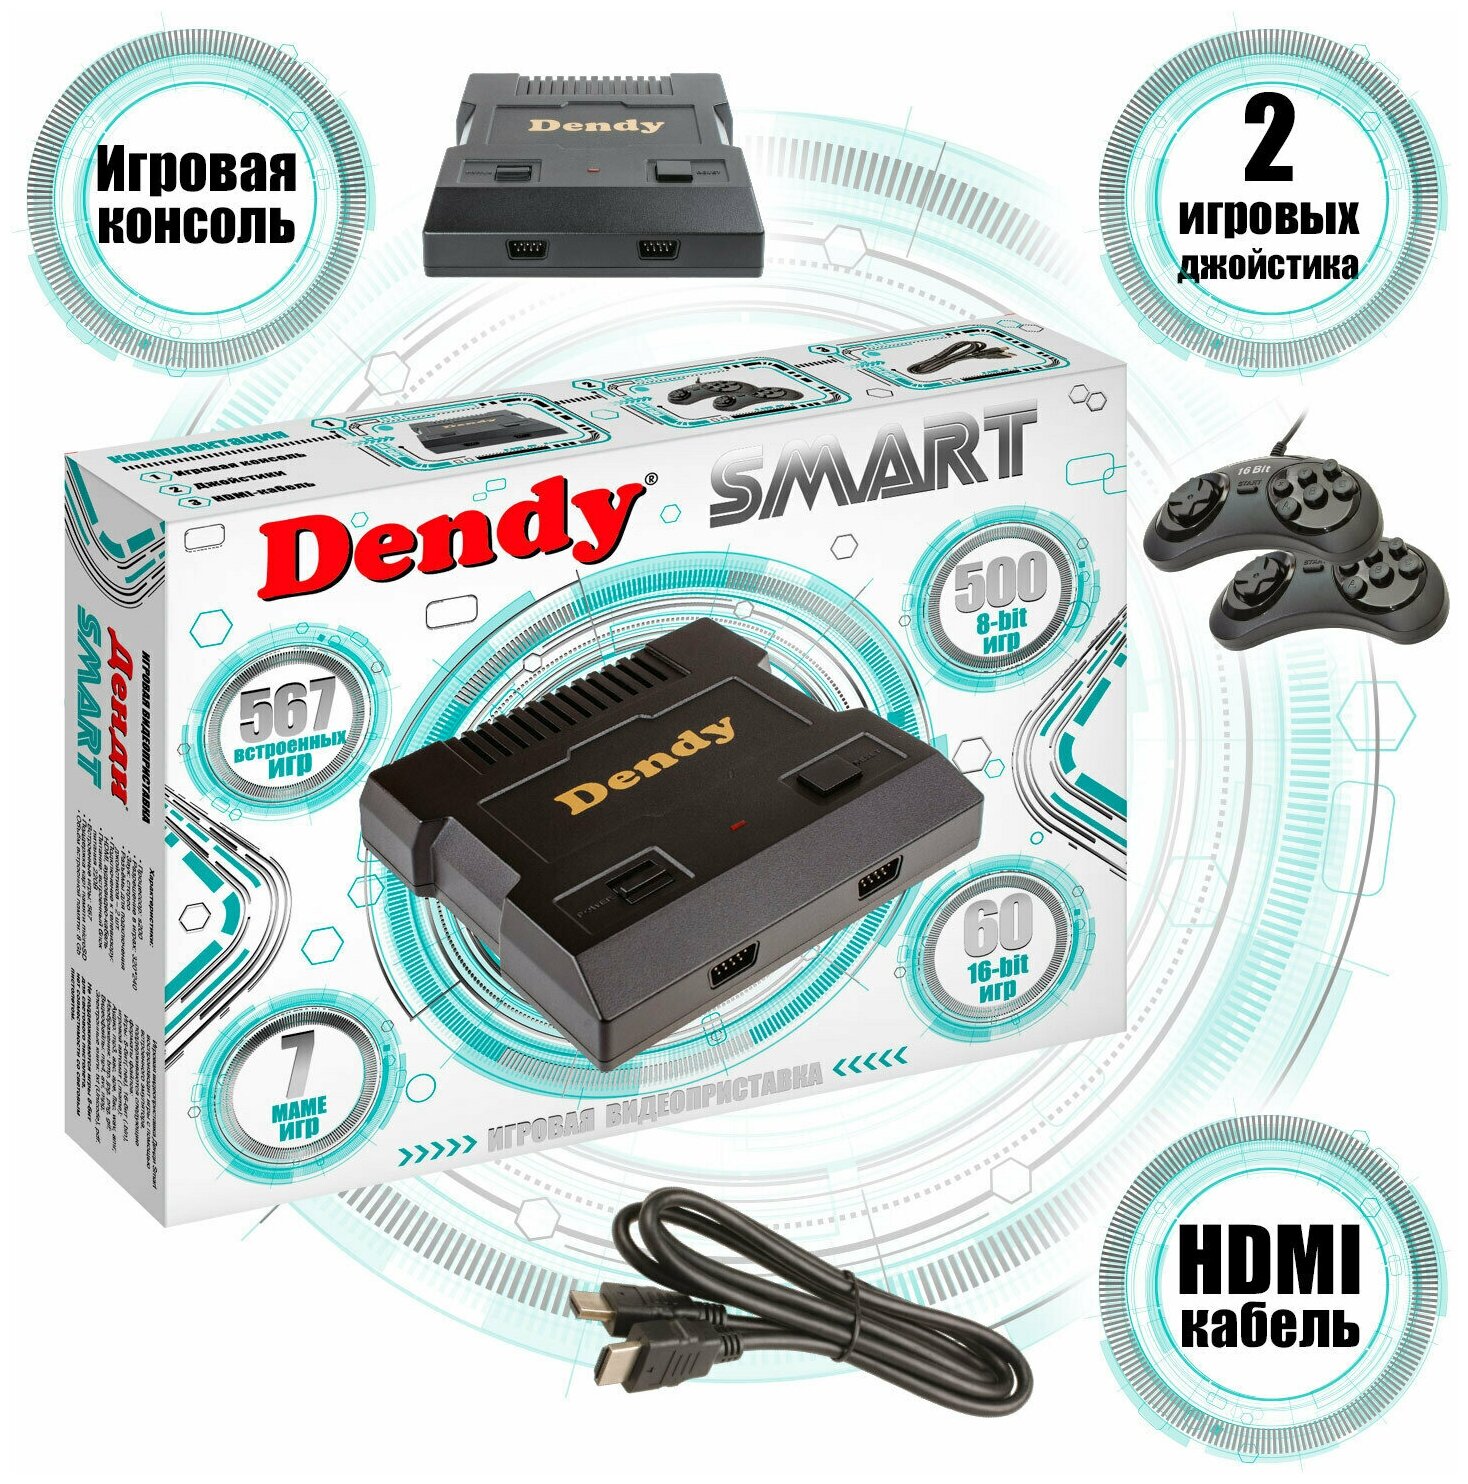 Ретро консоль 16 bit и 8 bit Dendy / Игровая приставка Dendy Smart 567 встроенных игр / Игры Денди, Сега / Два джойстика / HDMI / Приставка для телевизора